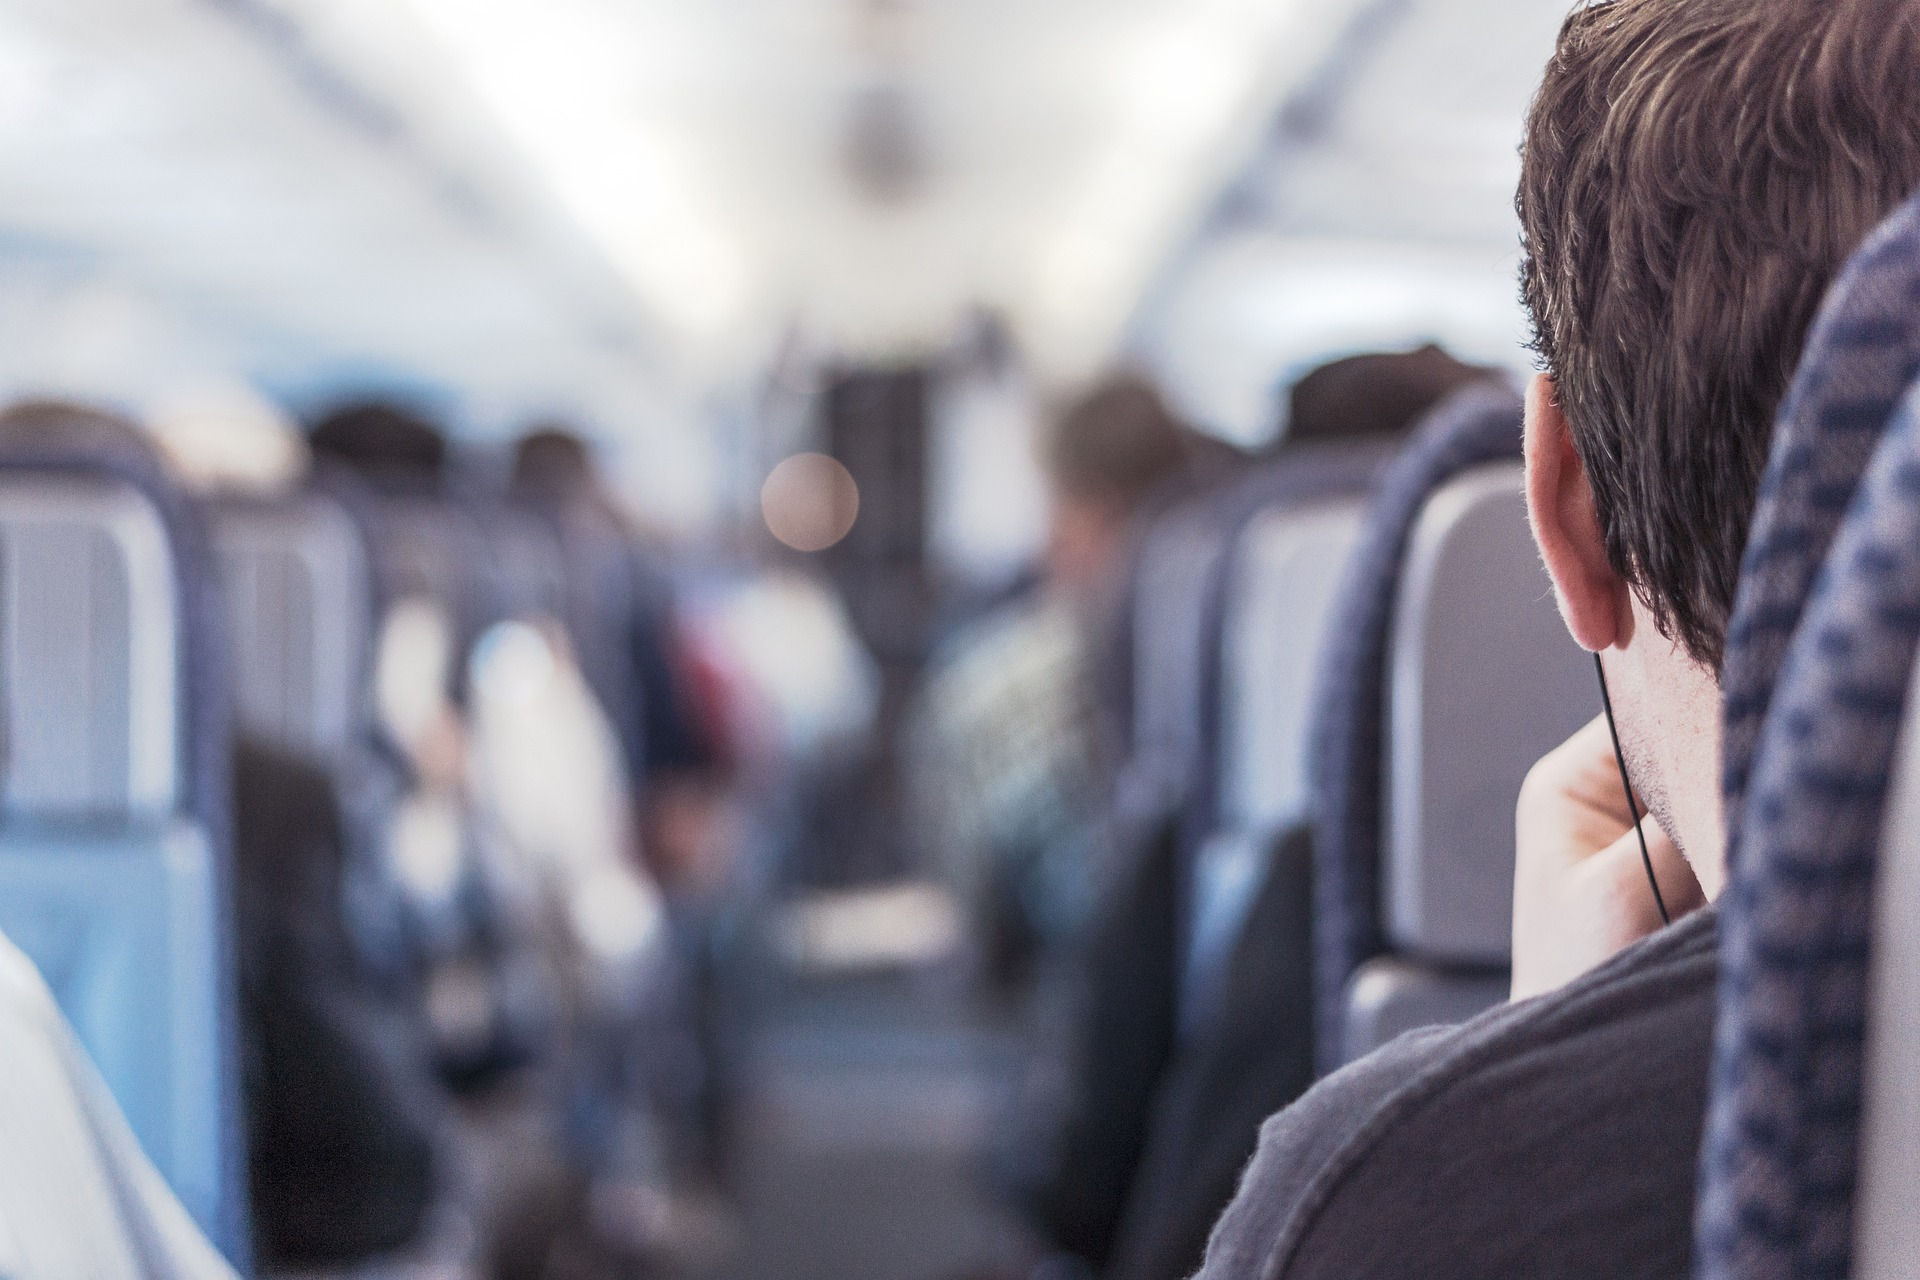 Hihetetlen balhé a repülőn: félmeztelenre vetkőzve őrjöngött egy női utas: „Ha kell, öljenek meg, de én dohányozni akarok!” – videó